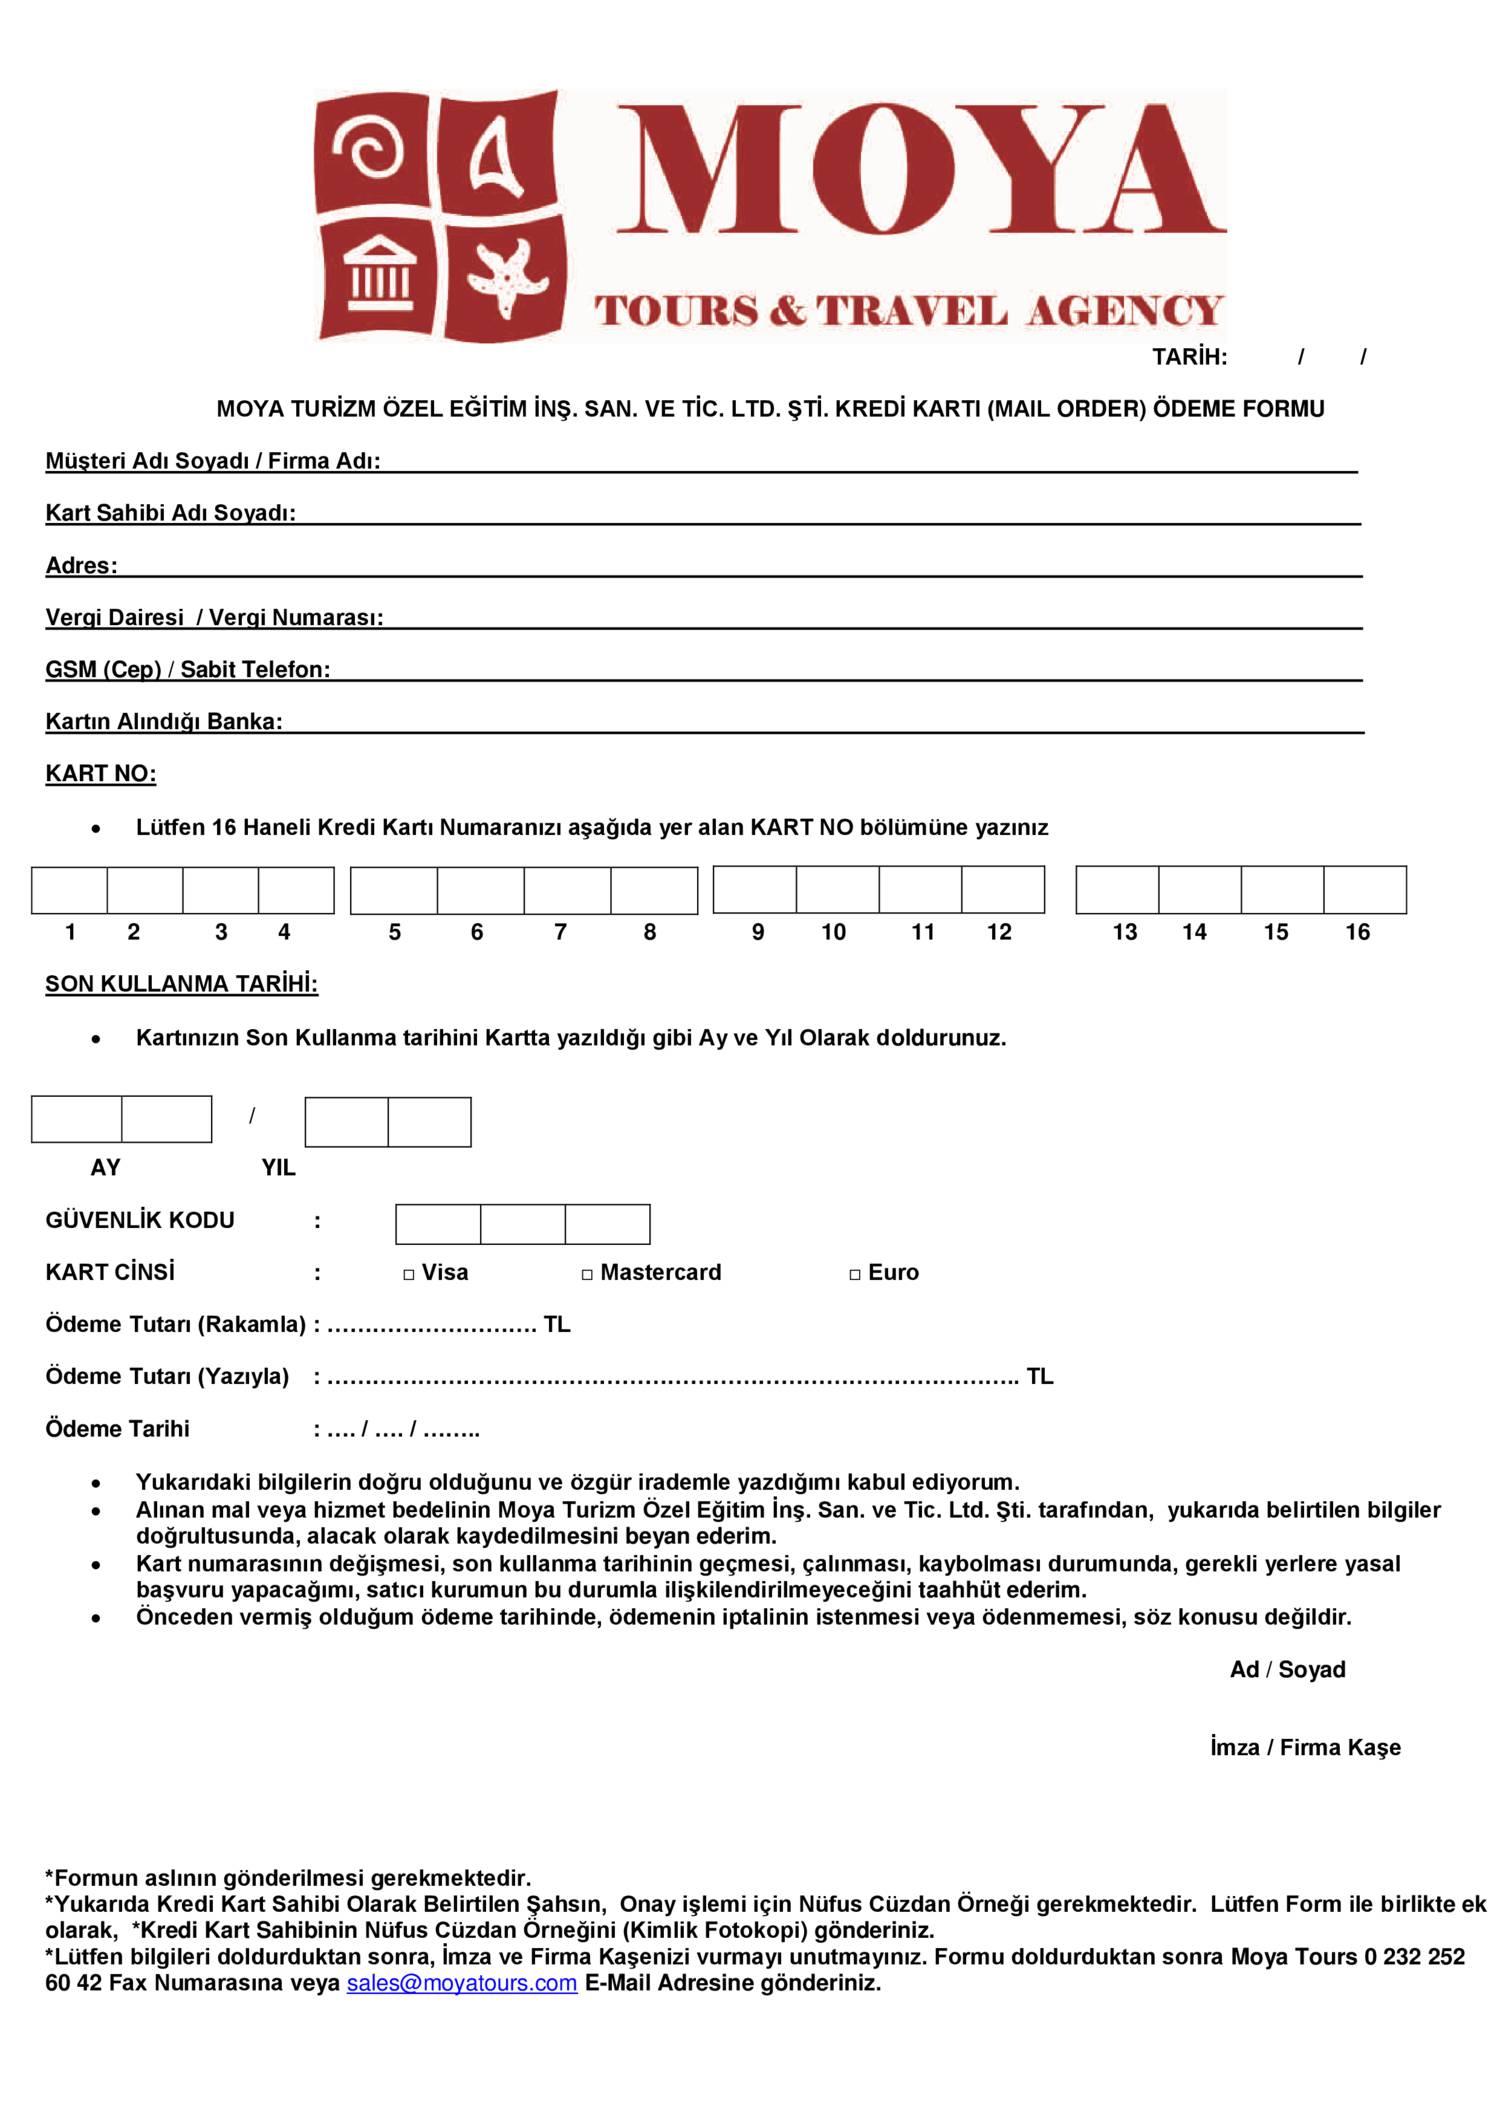 Boş mail order formu pdf